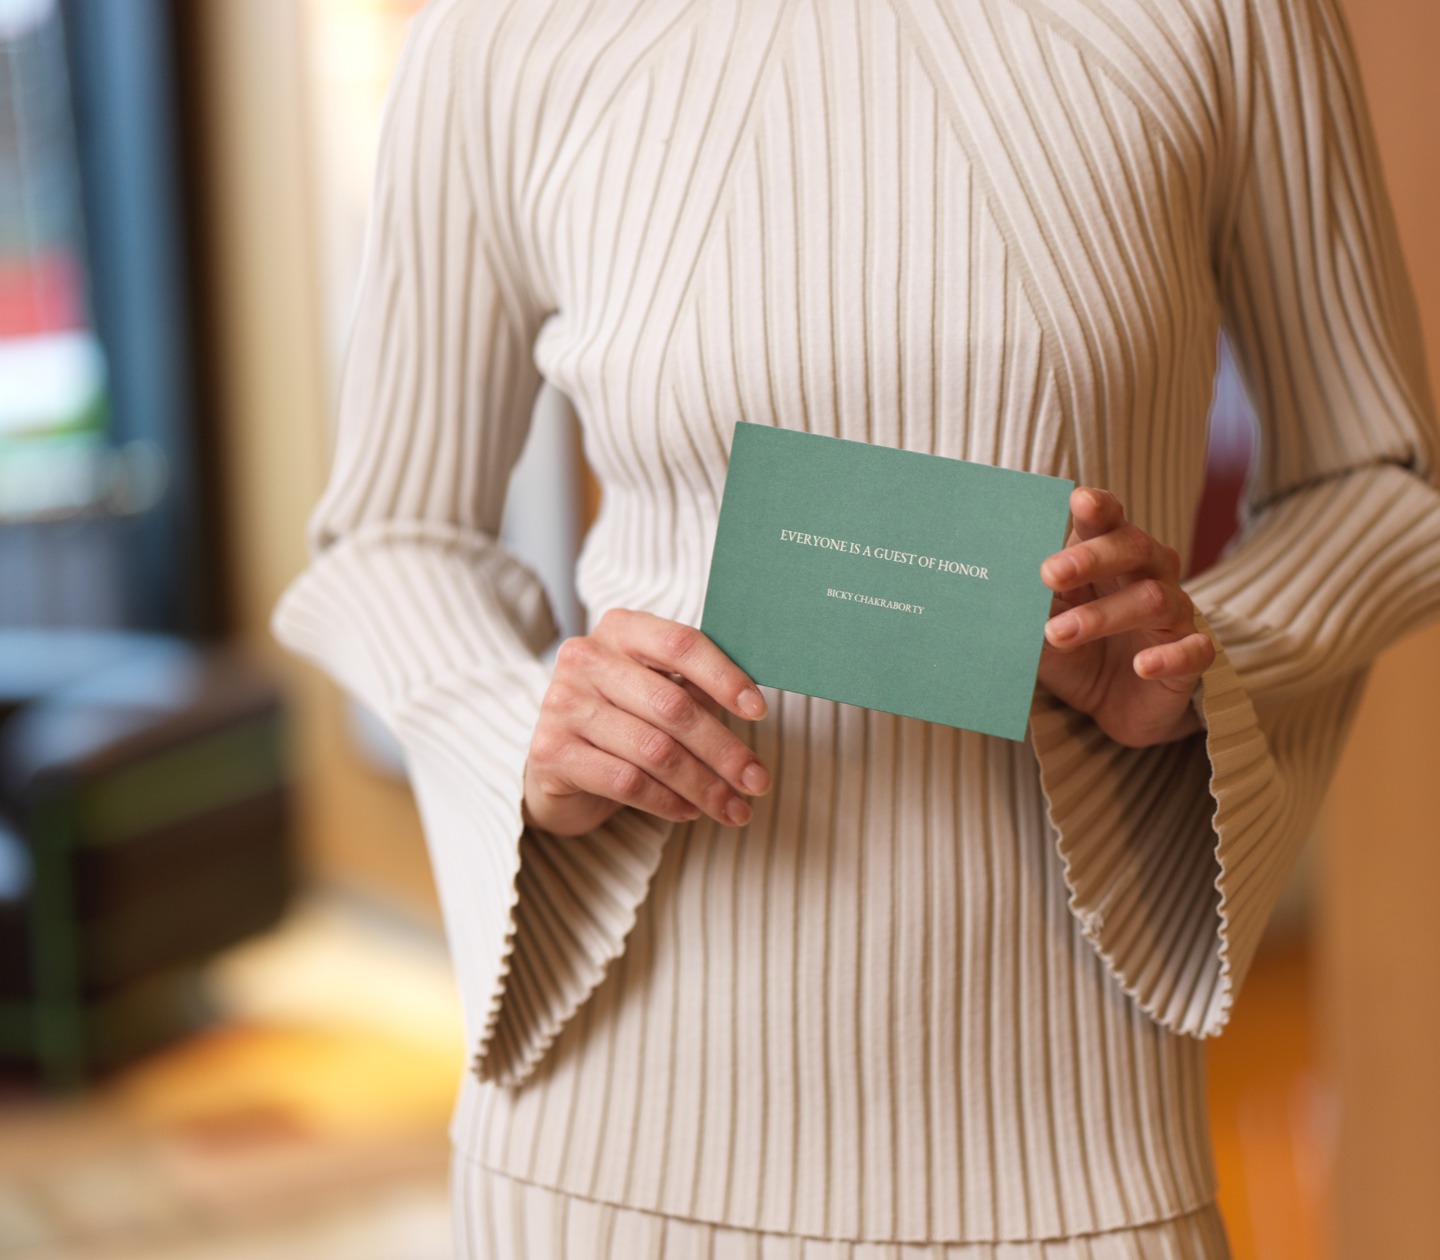 Kvinna som håller grönt kort från Elite Hotels